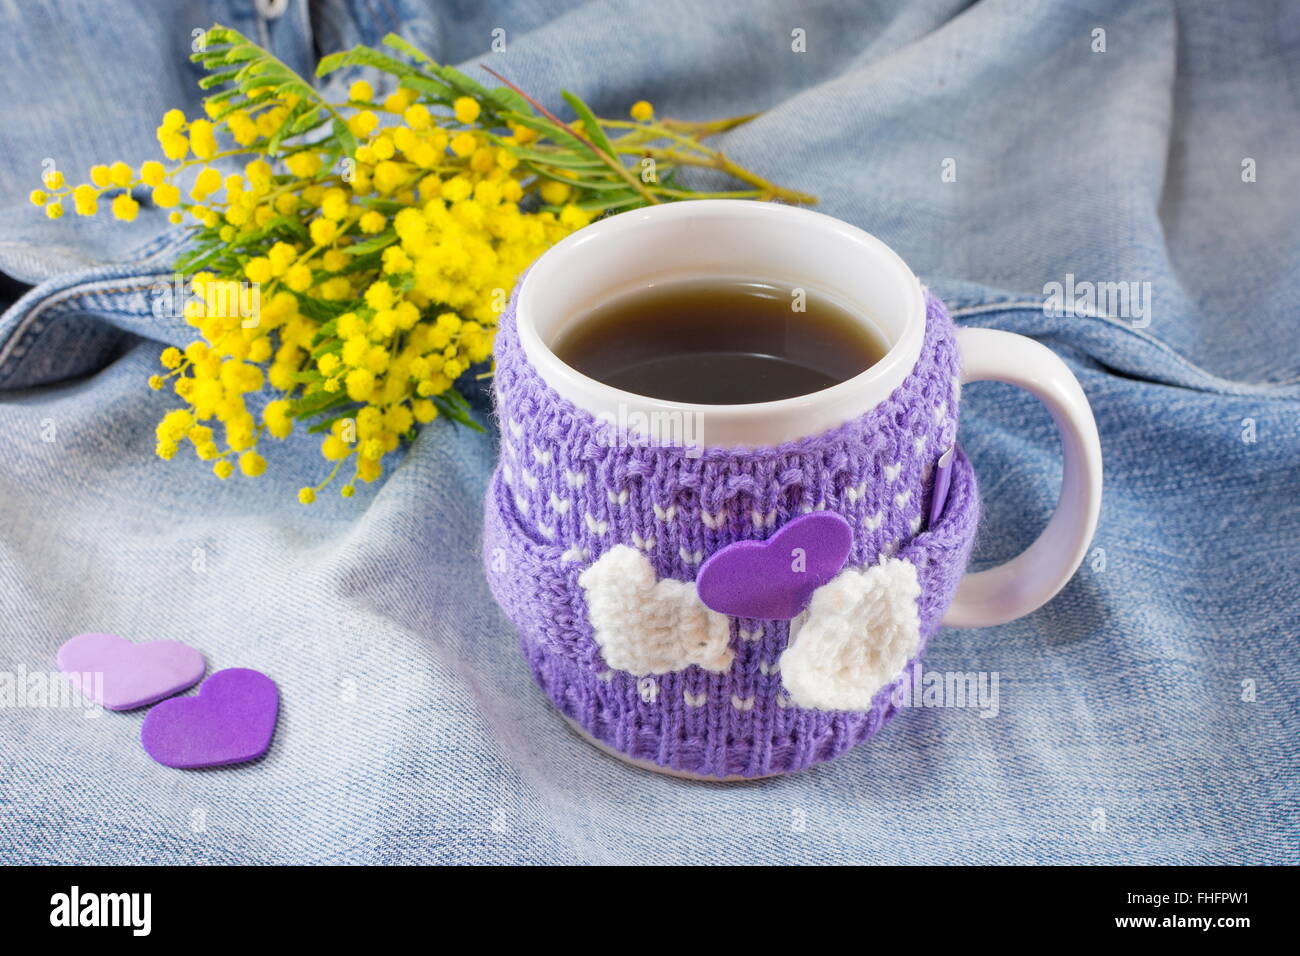 Tasse de thé d'hiver et mimosa fleurs sur fond bleu denim Banque D'Images